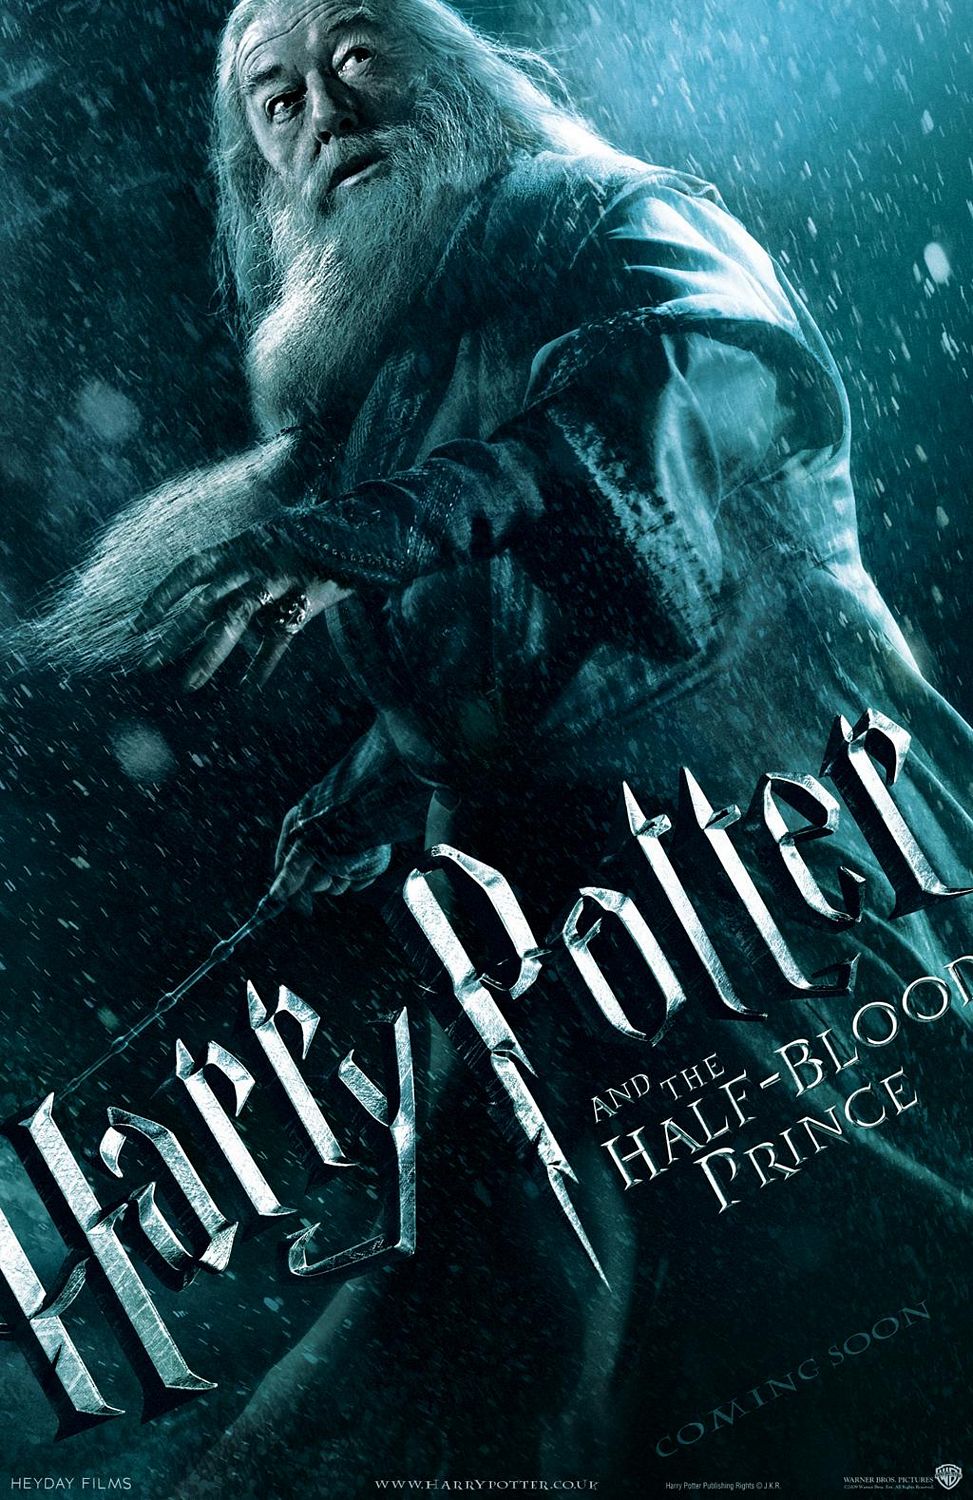 Постер - Гарри Поттер и Принц-полукровка: 973x1500 / 314 Кб